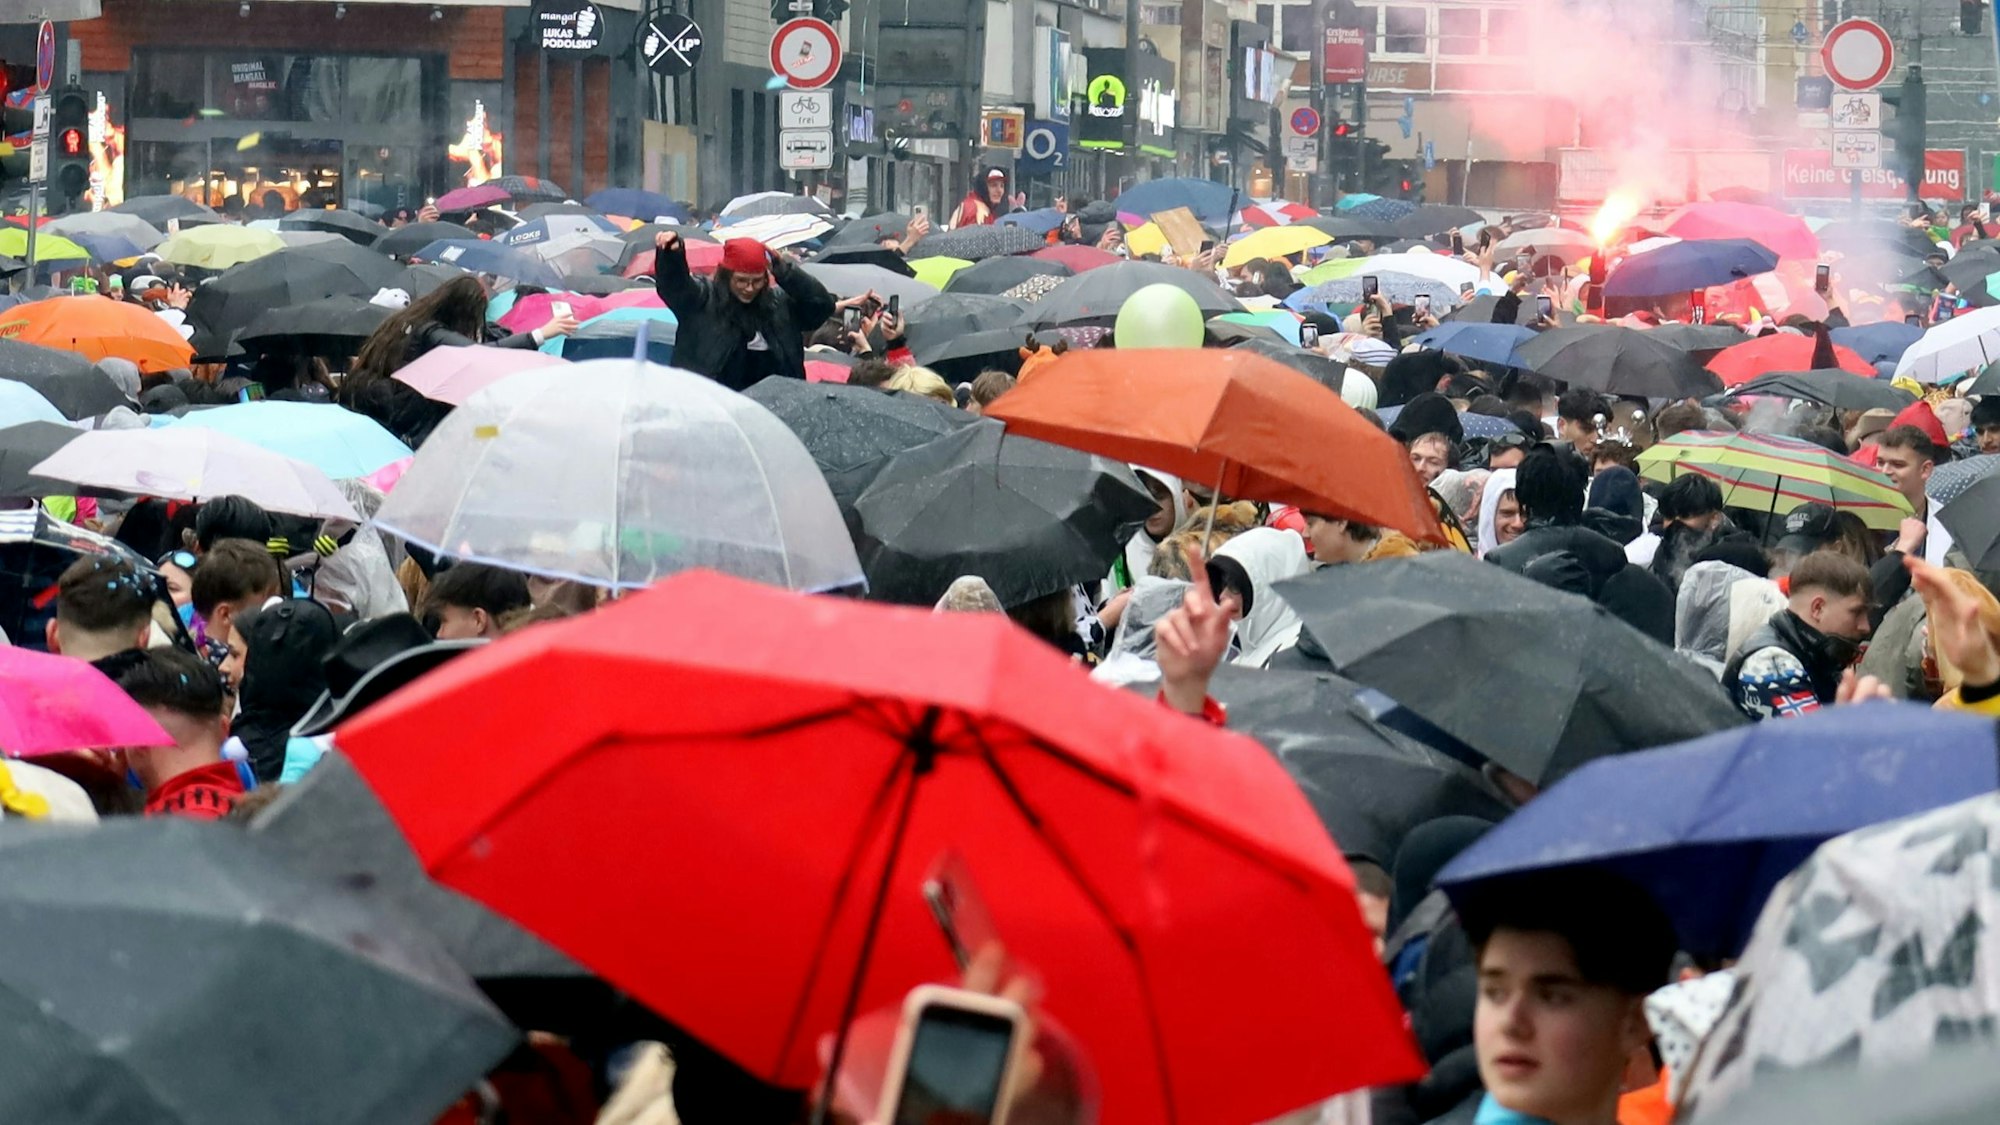 Der Regenschirm gehört am Mittag zum zwingenden Accessoire von jedem, der auf der Straße feiern möchte.